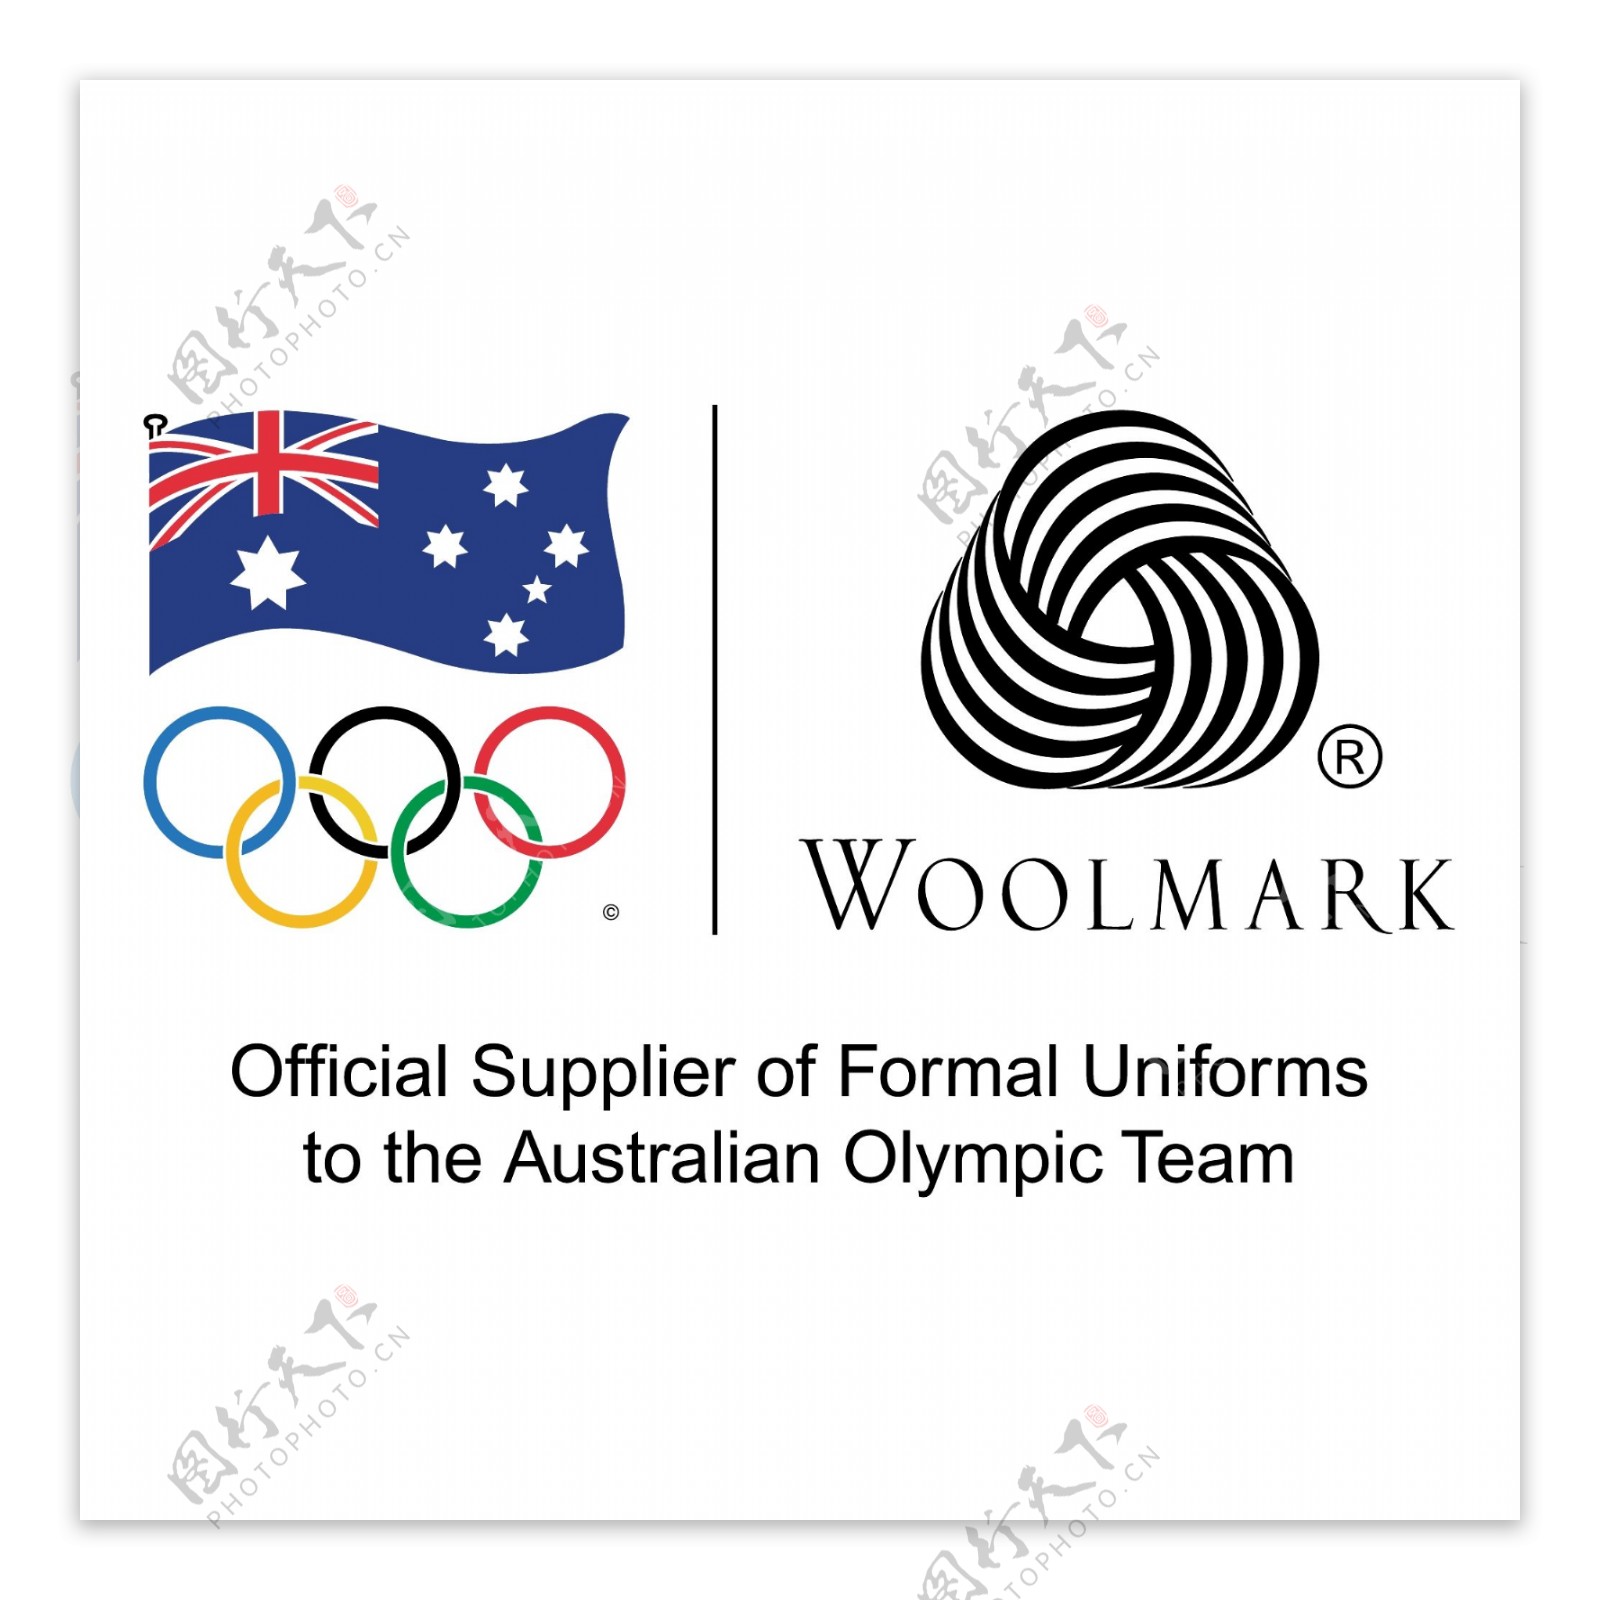 国际羊毛局官方供应商正式制服澳大利亚奥运代表队